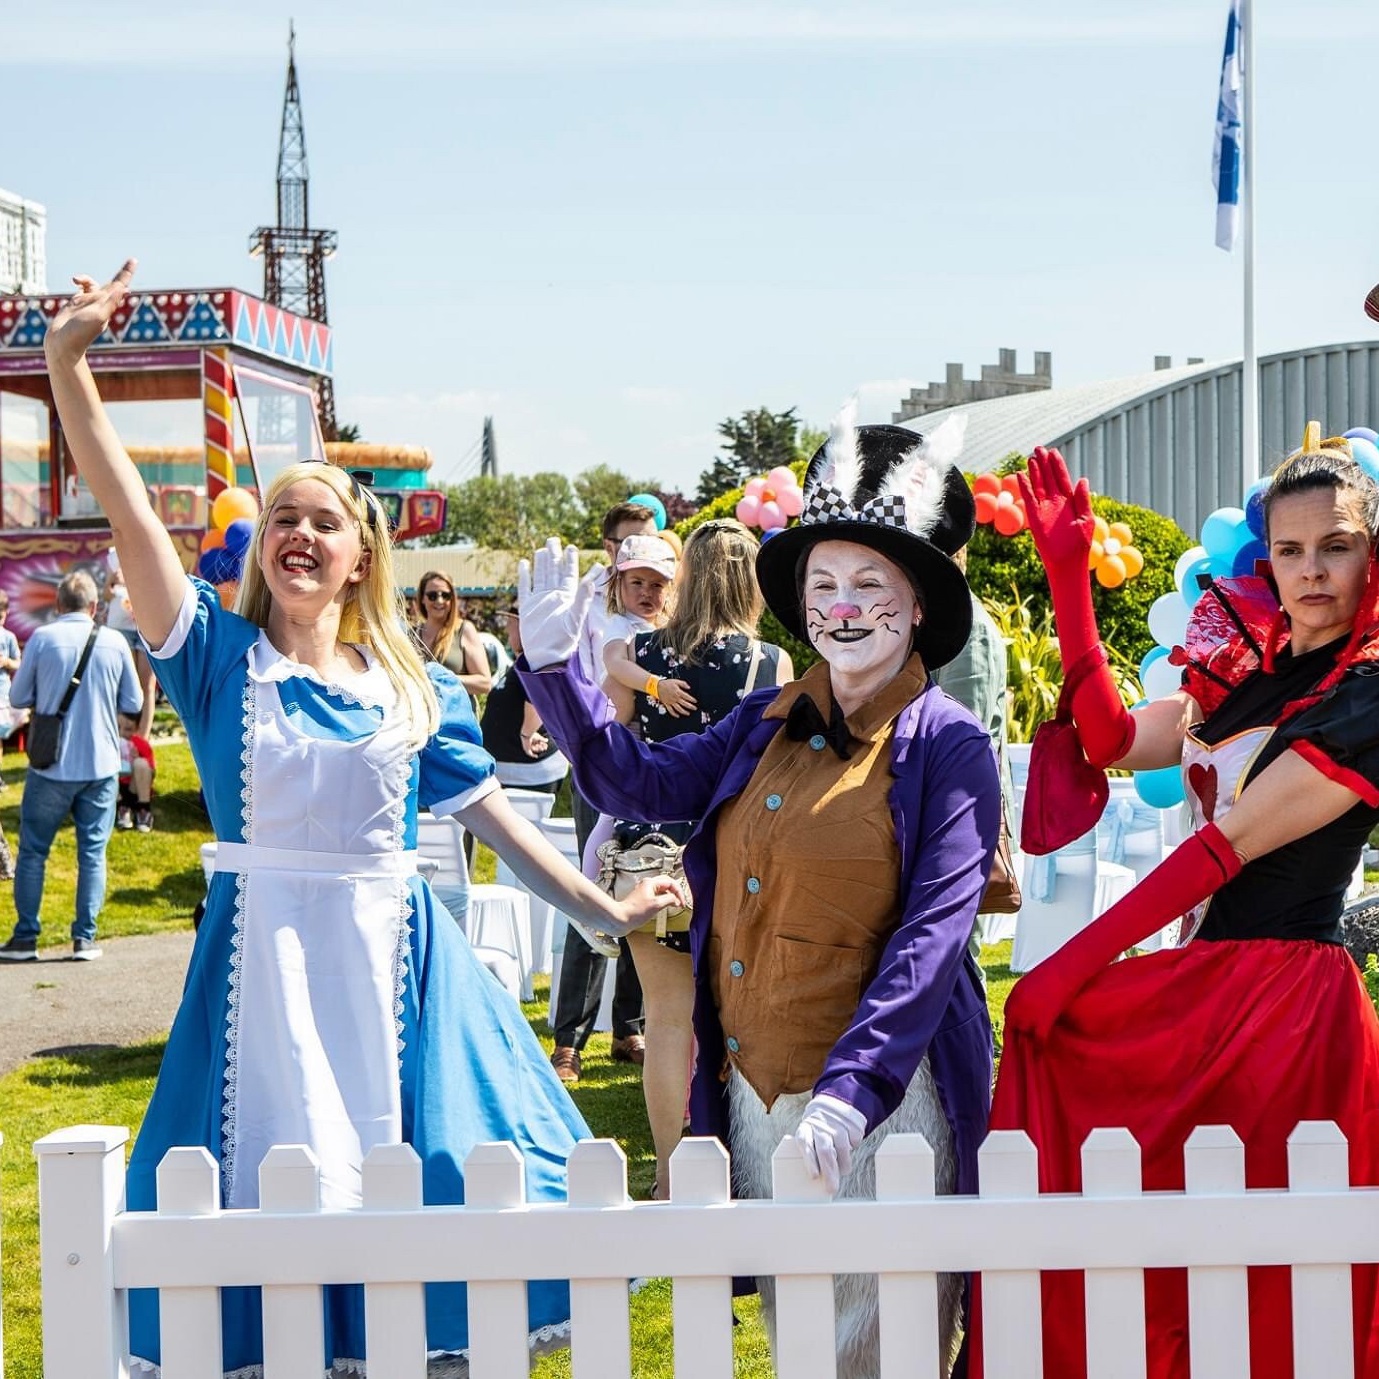 Actors dressed as Alice in wonderland costimes